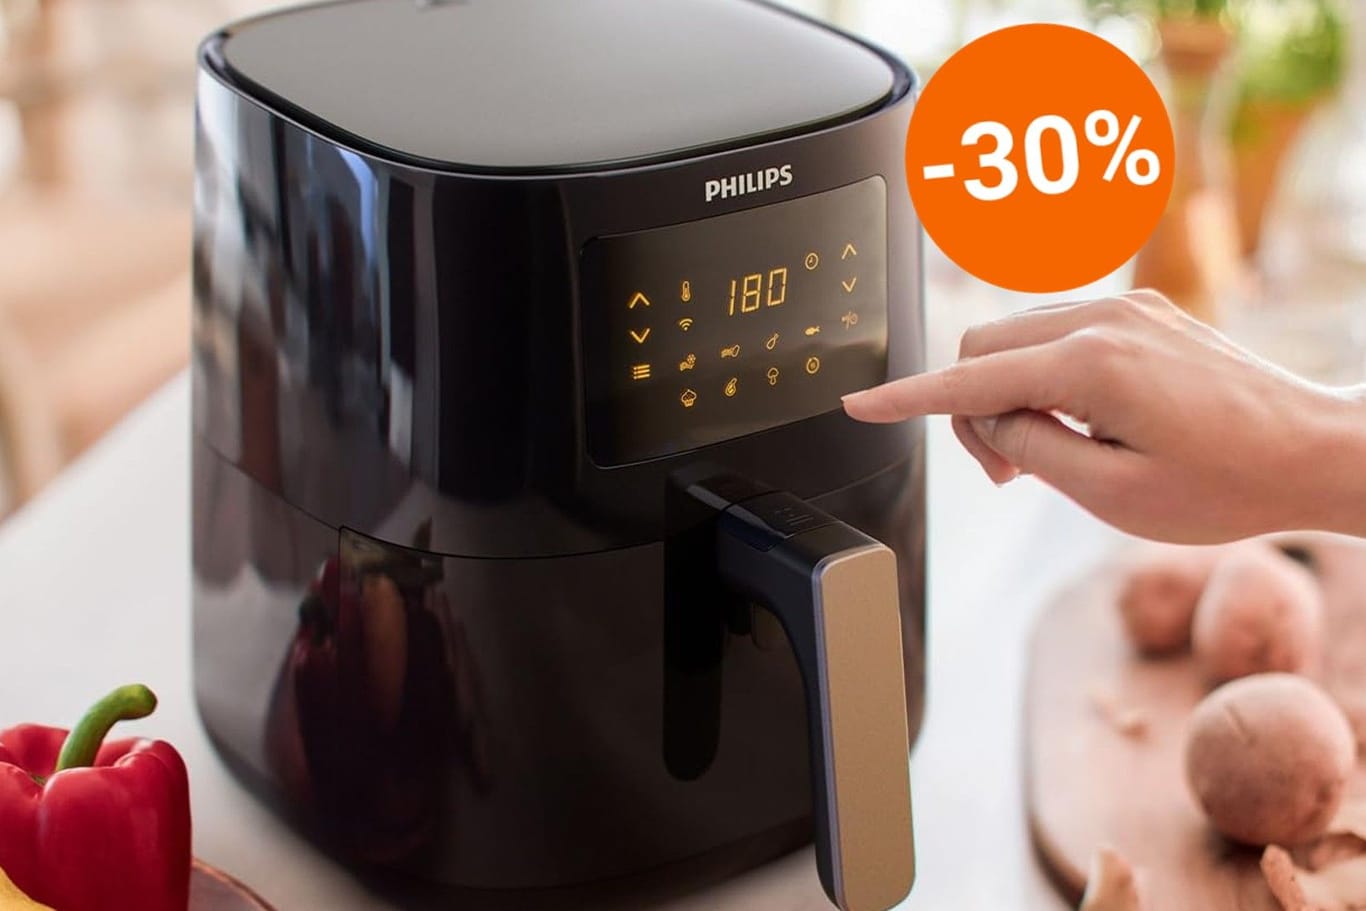 Der Airfryer von Philips ist heute bei Amazon zu einem attraktiven Preis erhältlich.